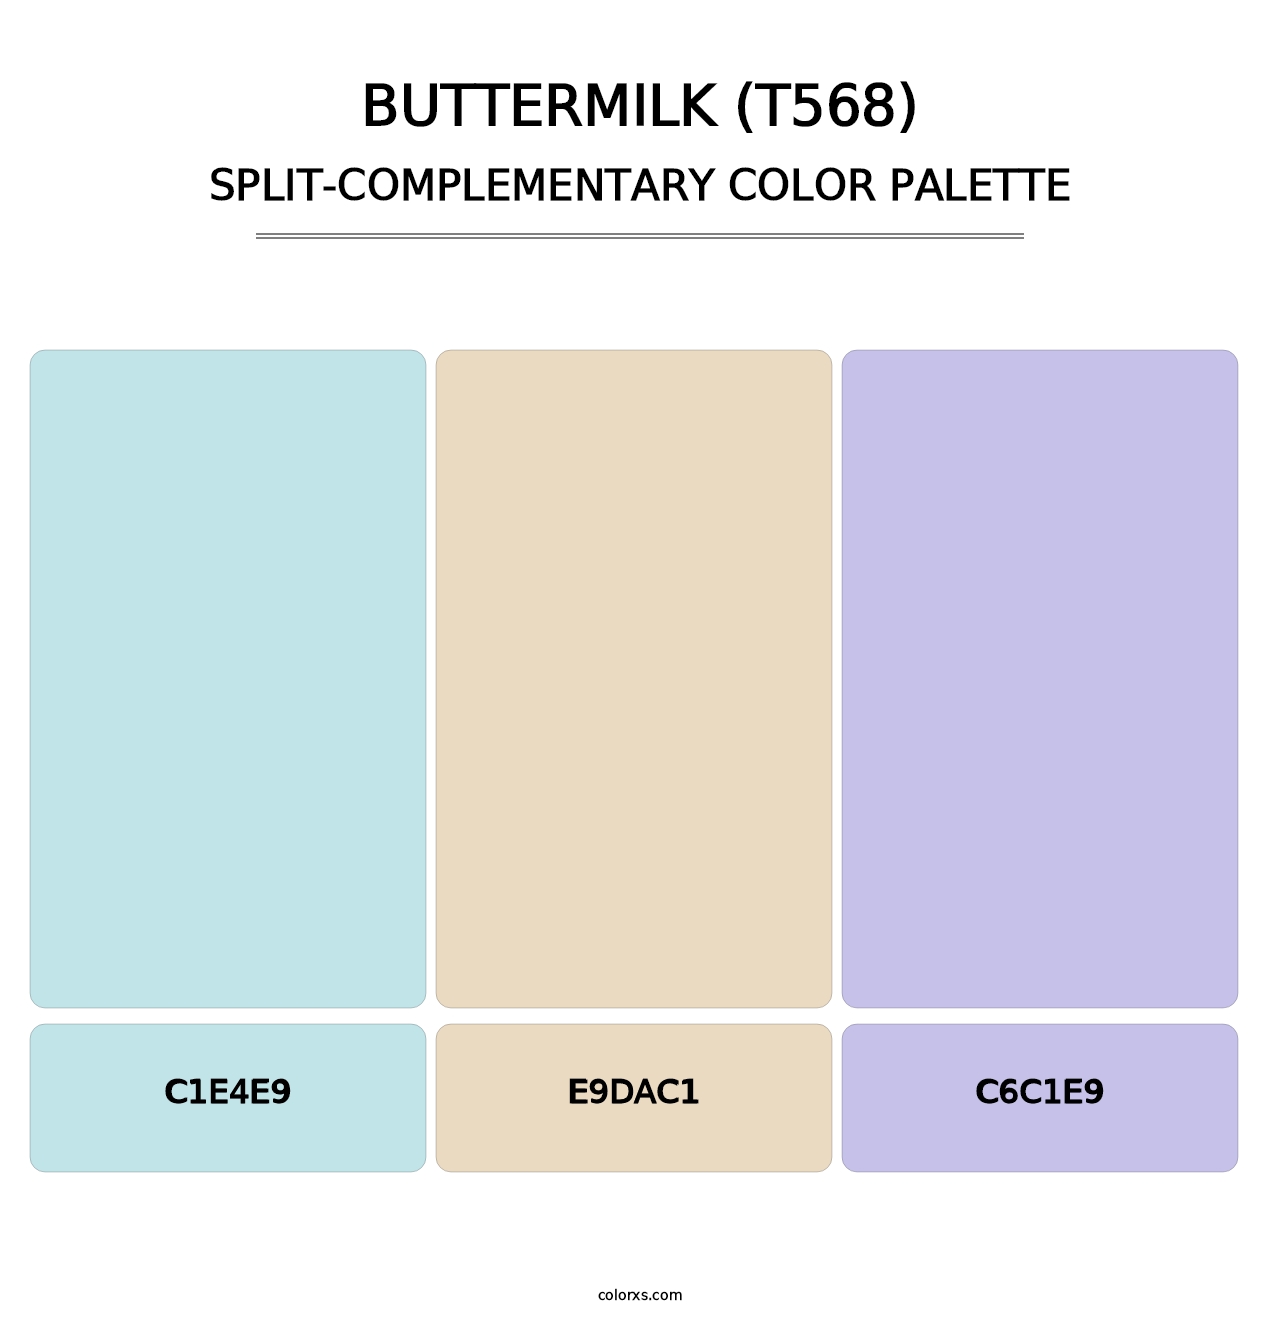 Buttermilk (T568) - Split-Complementary Color Palette